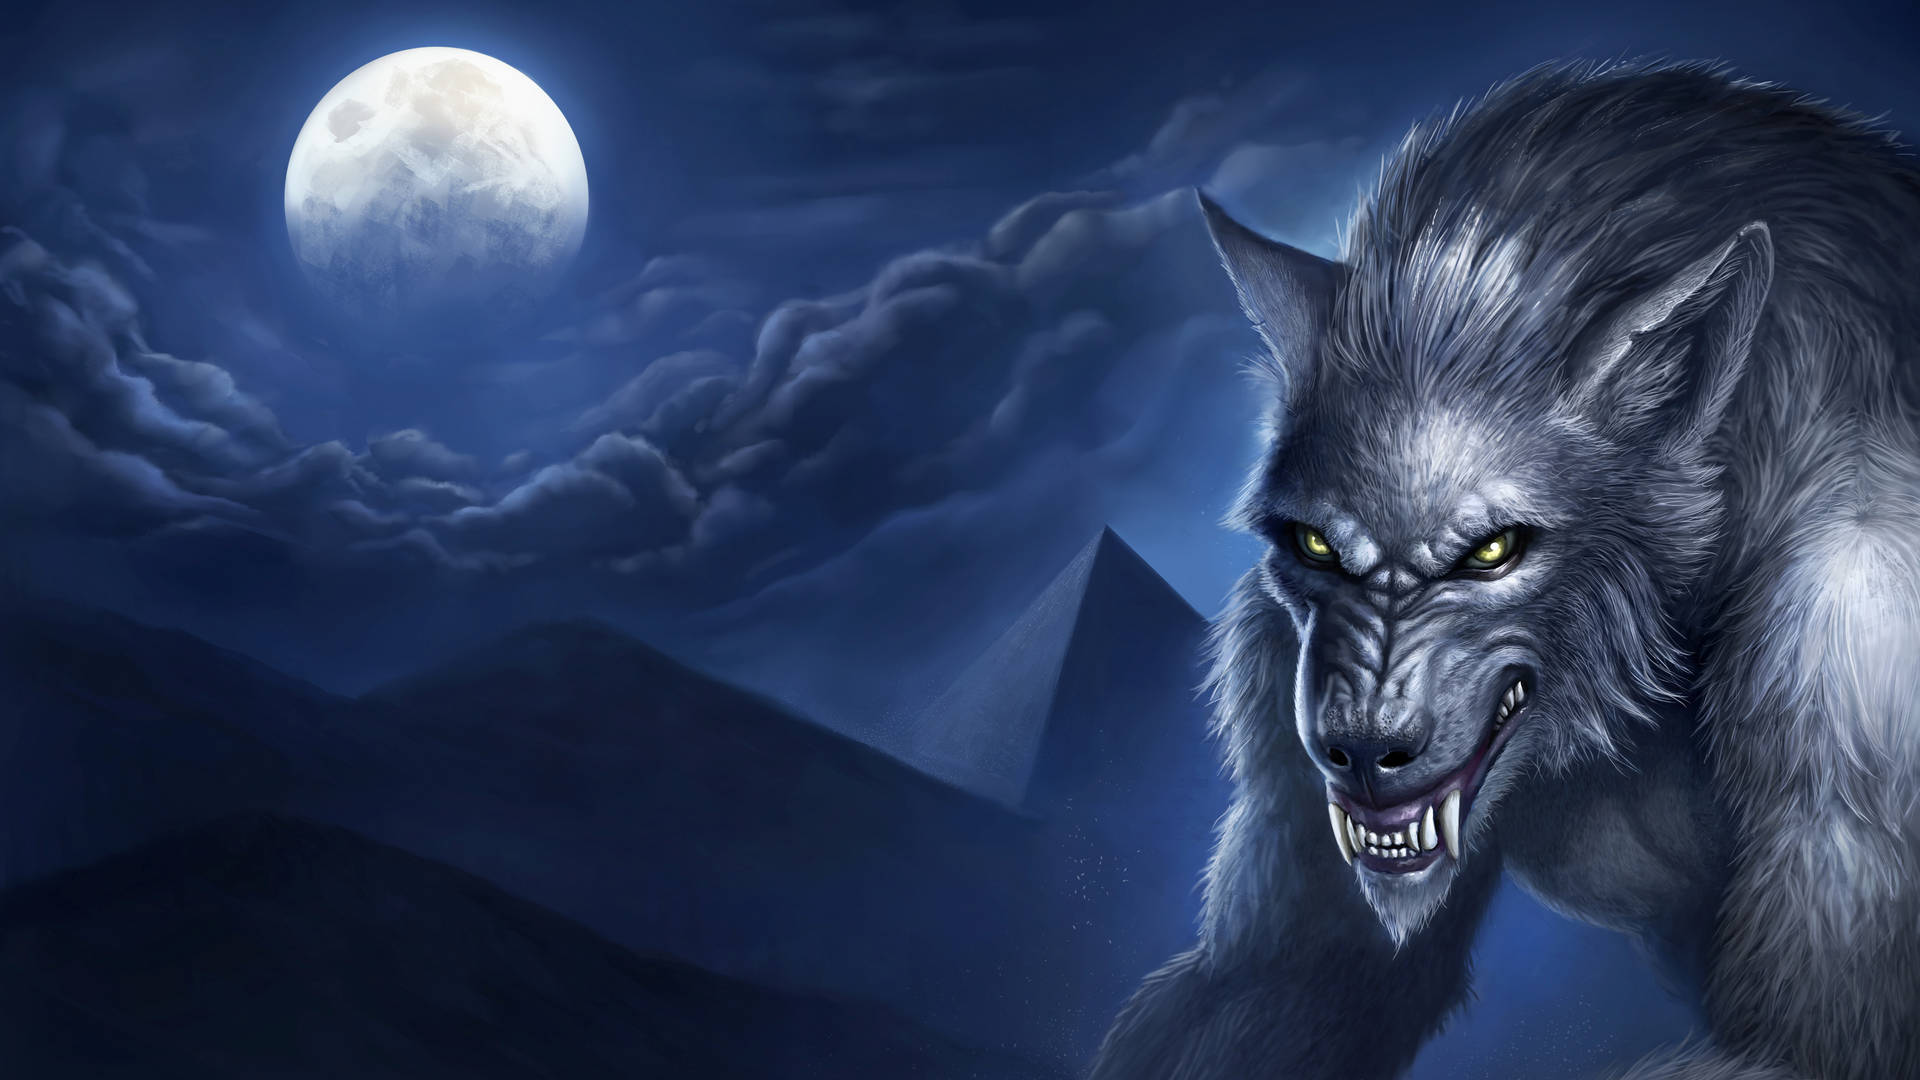 Dark Werewolf Moon Pyramids Wallpaper